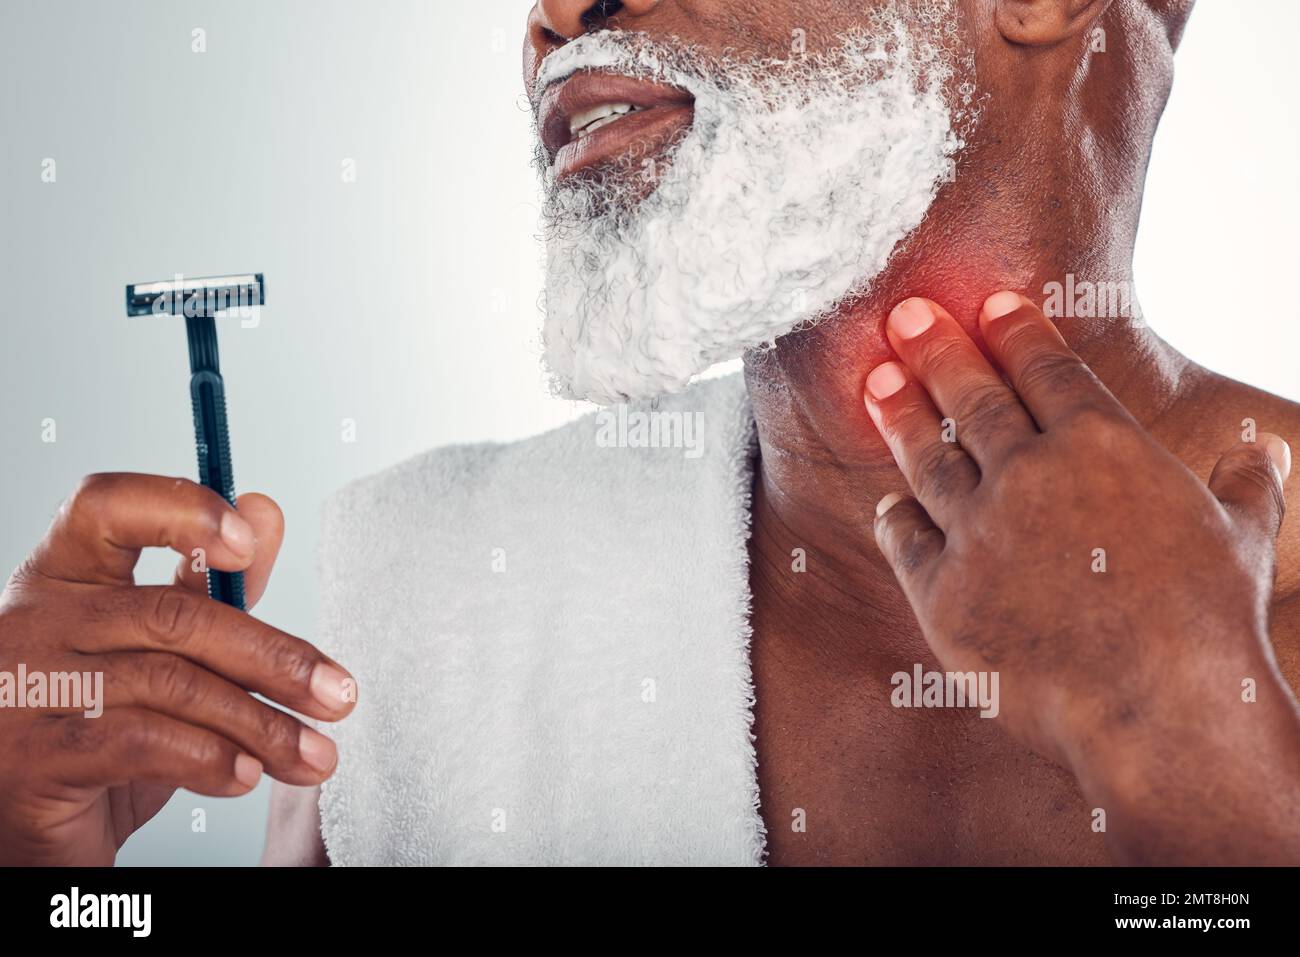 Mann, Rasur und Hand-am-Nacken gegen Schmerzen durch Rasierverbrennungen oder Schnittverletzungen während der Pflege mit Schaum im Gesicht. Unfall, Klinge und Verletzung beim Bartrasieren im Badezimmer Stockfoto